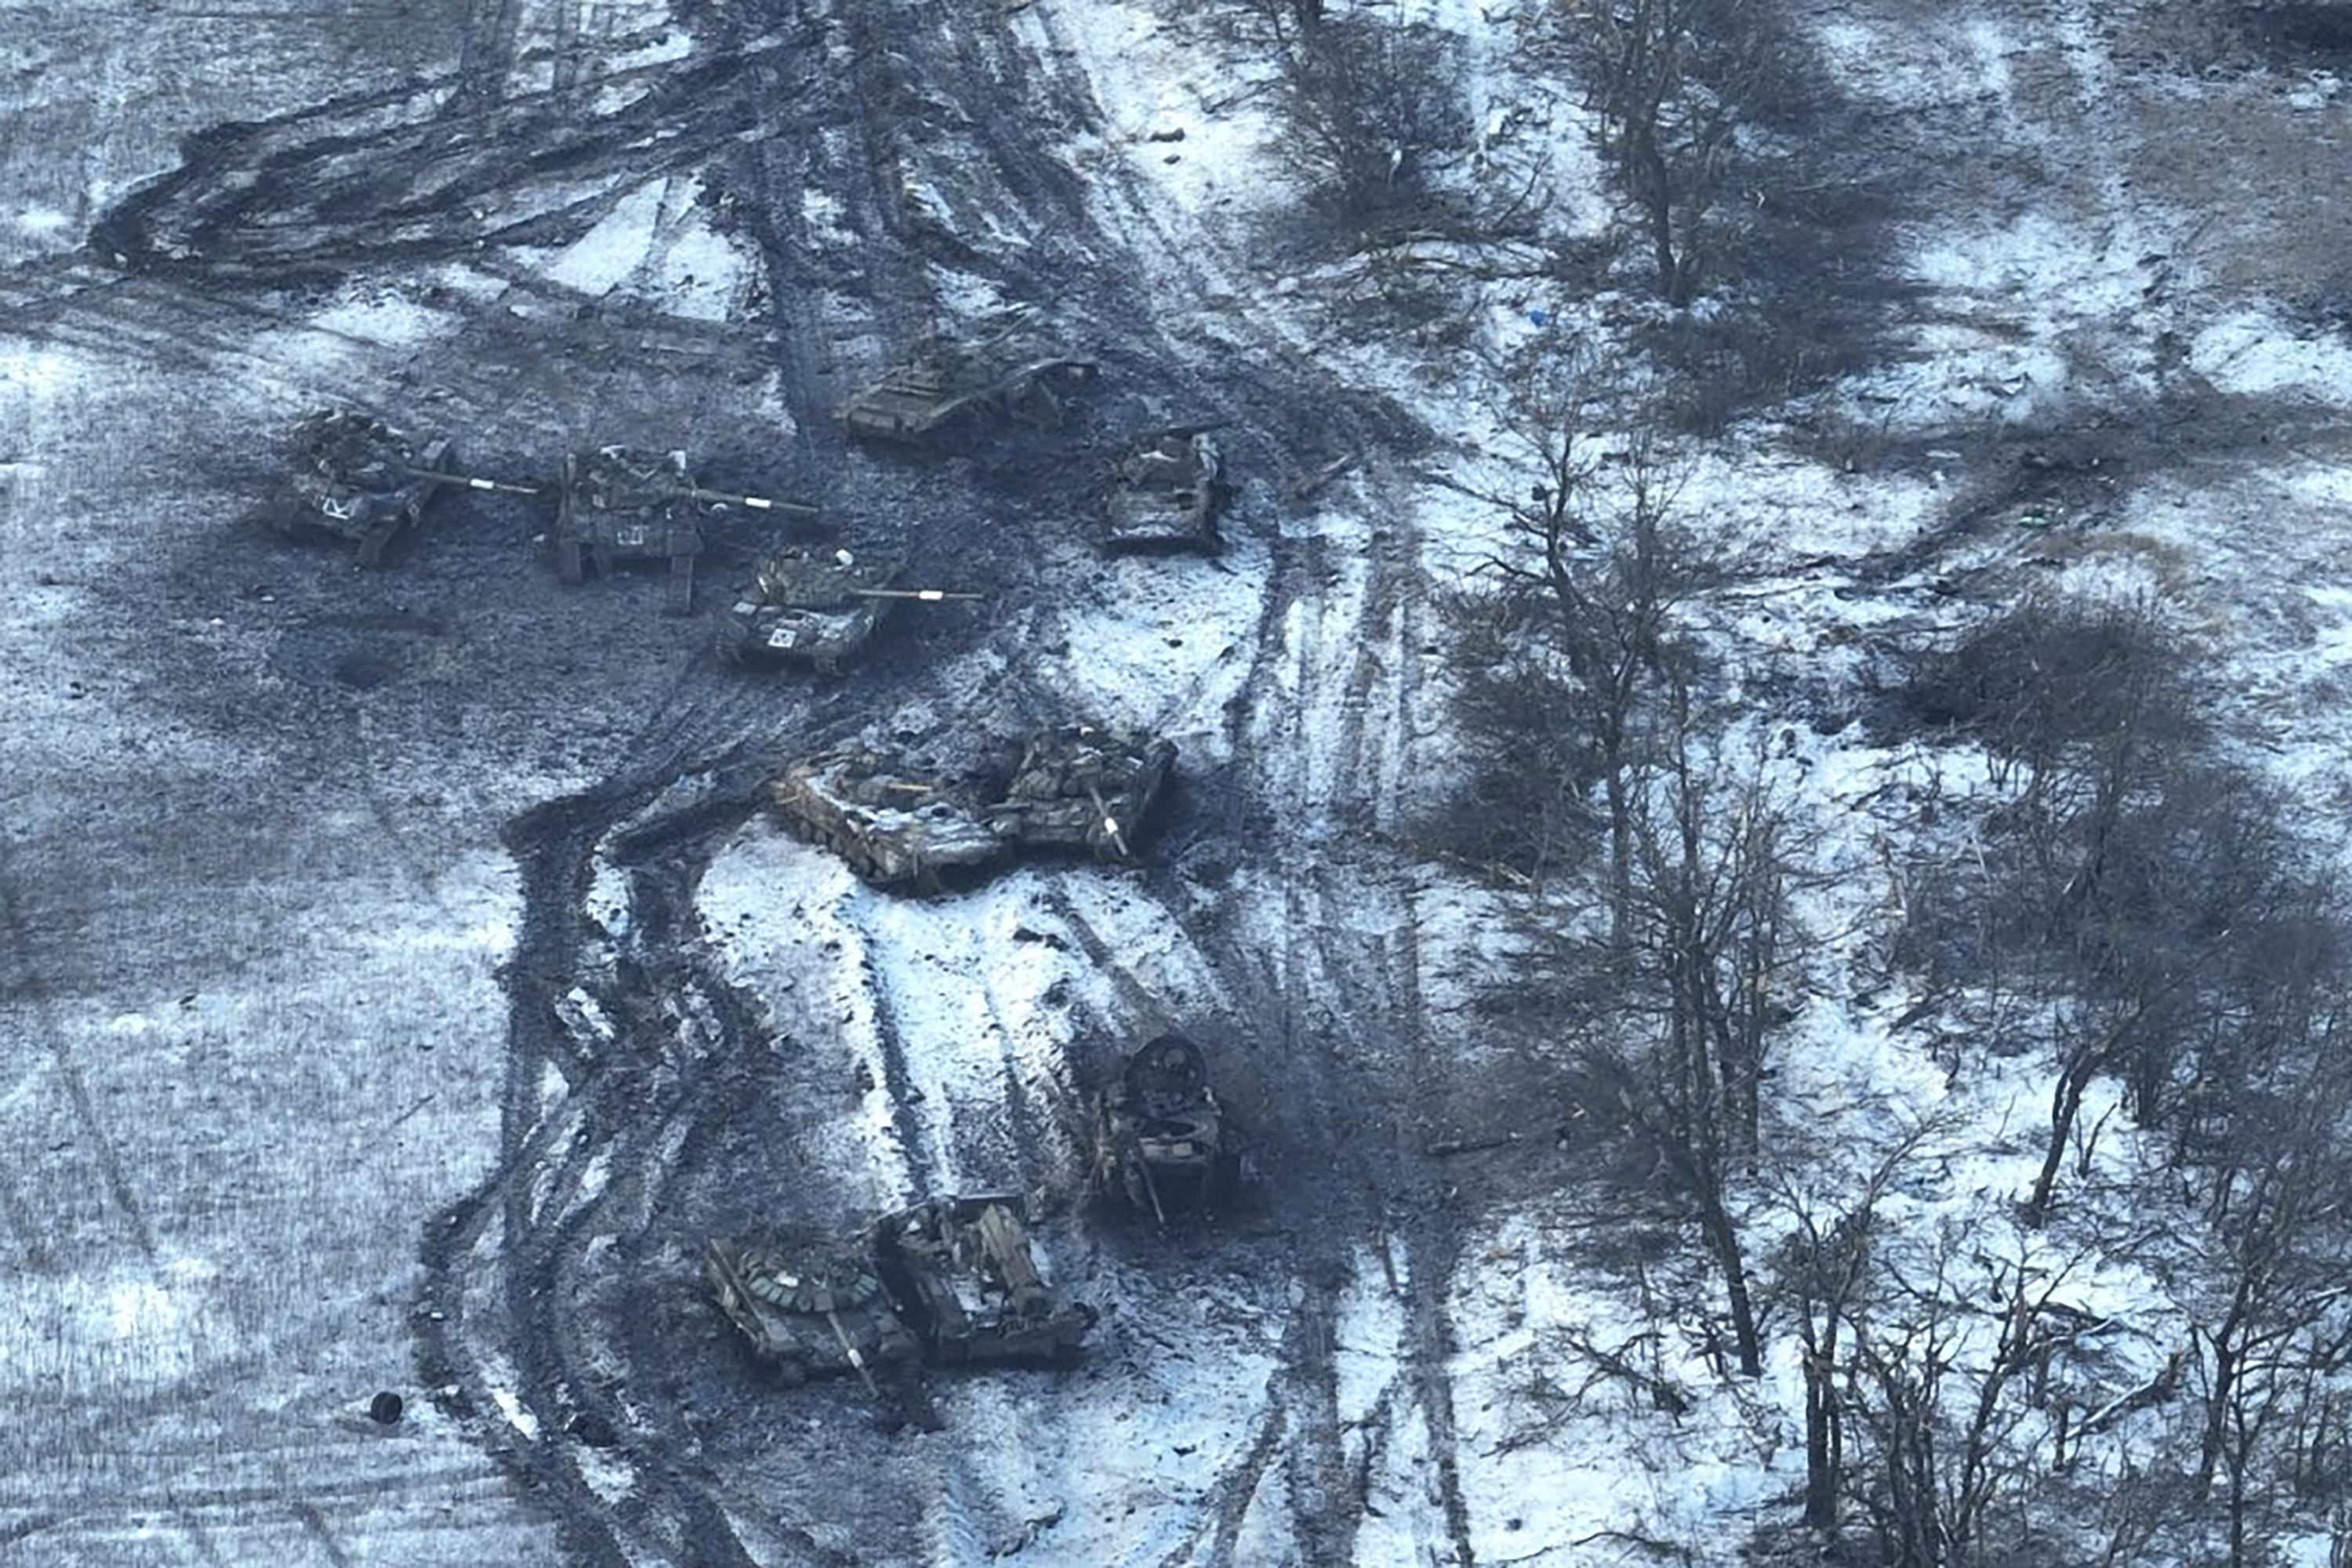 Tanques rusos dañados en un campo tras intentar atacar, Vuhledar, Ucrania.